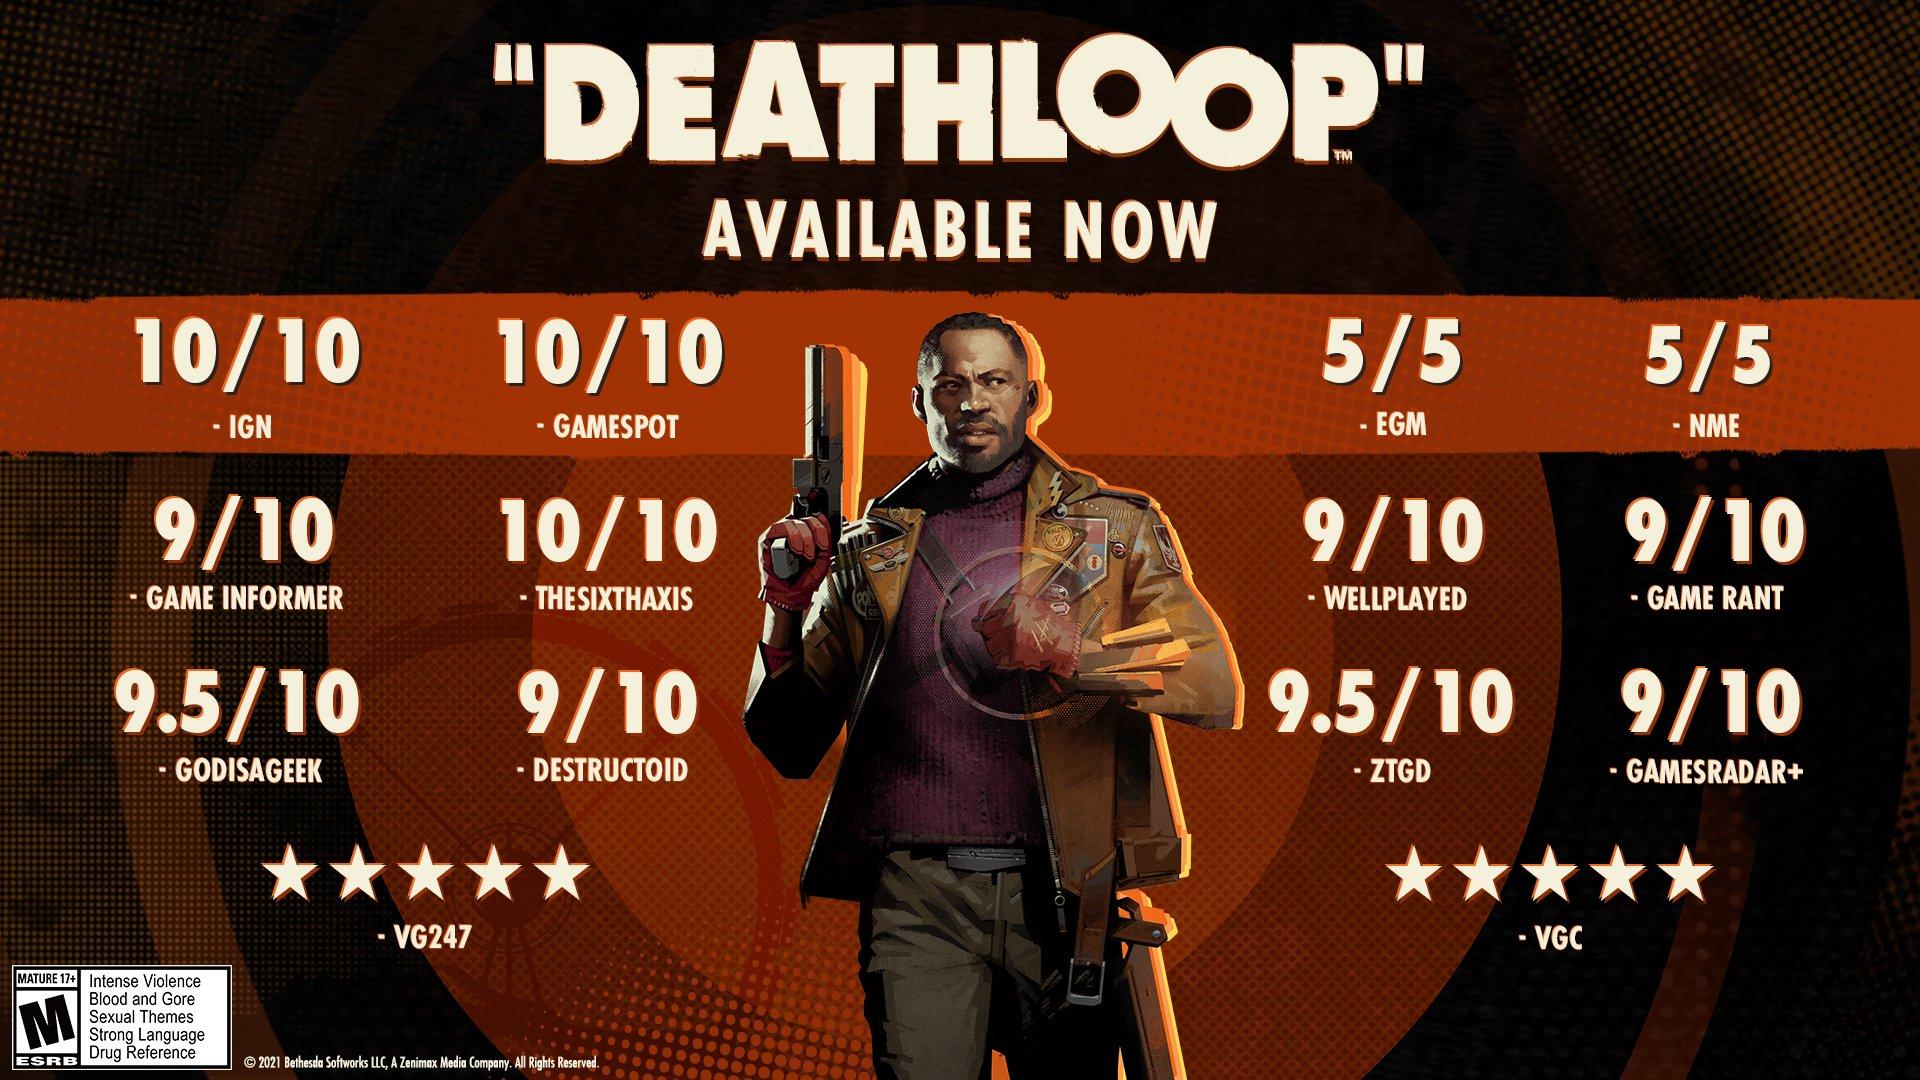 Deathloop - PlayStation 5